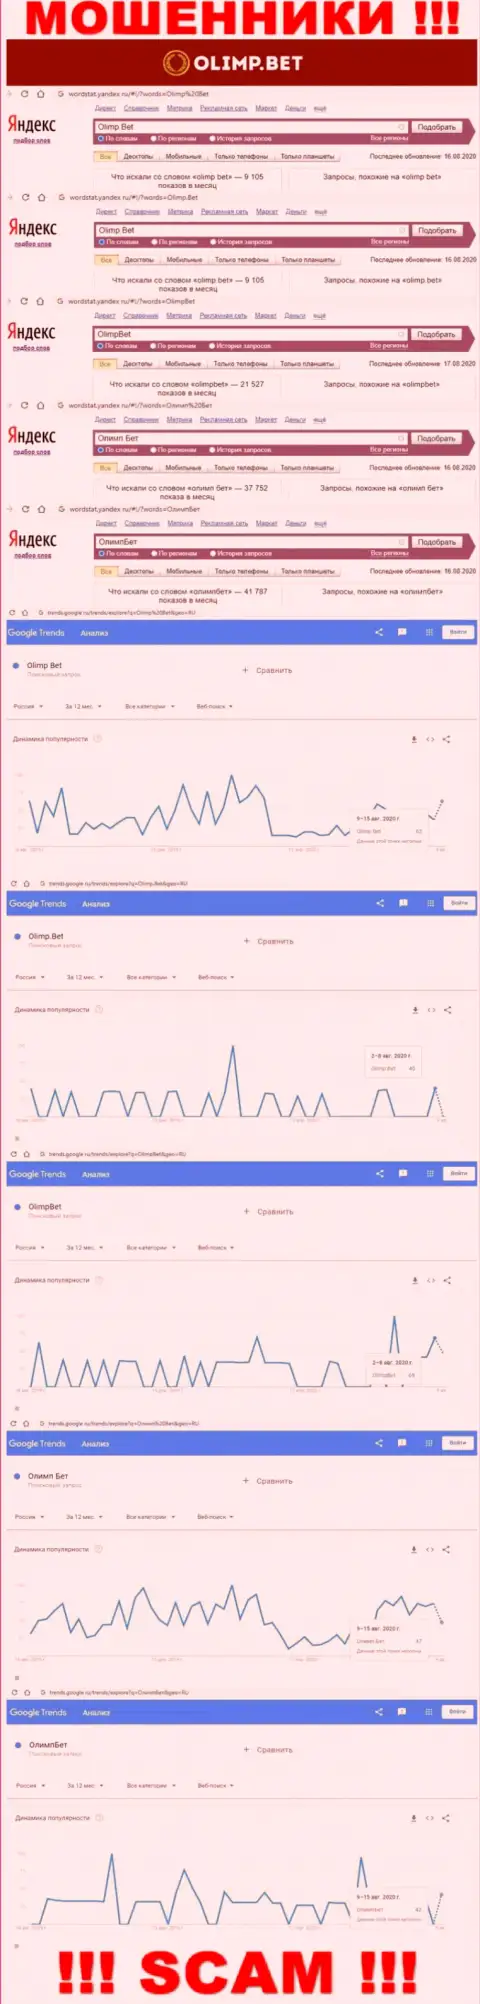 Статистические показатели суммарного числа просмотров данных о жуликах Олимп Бет в глобальной internet сети